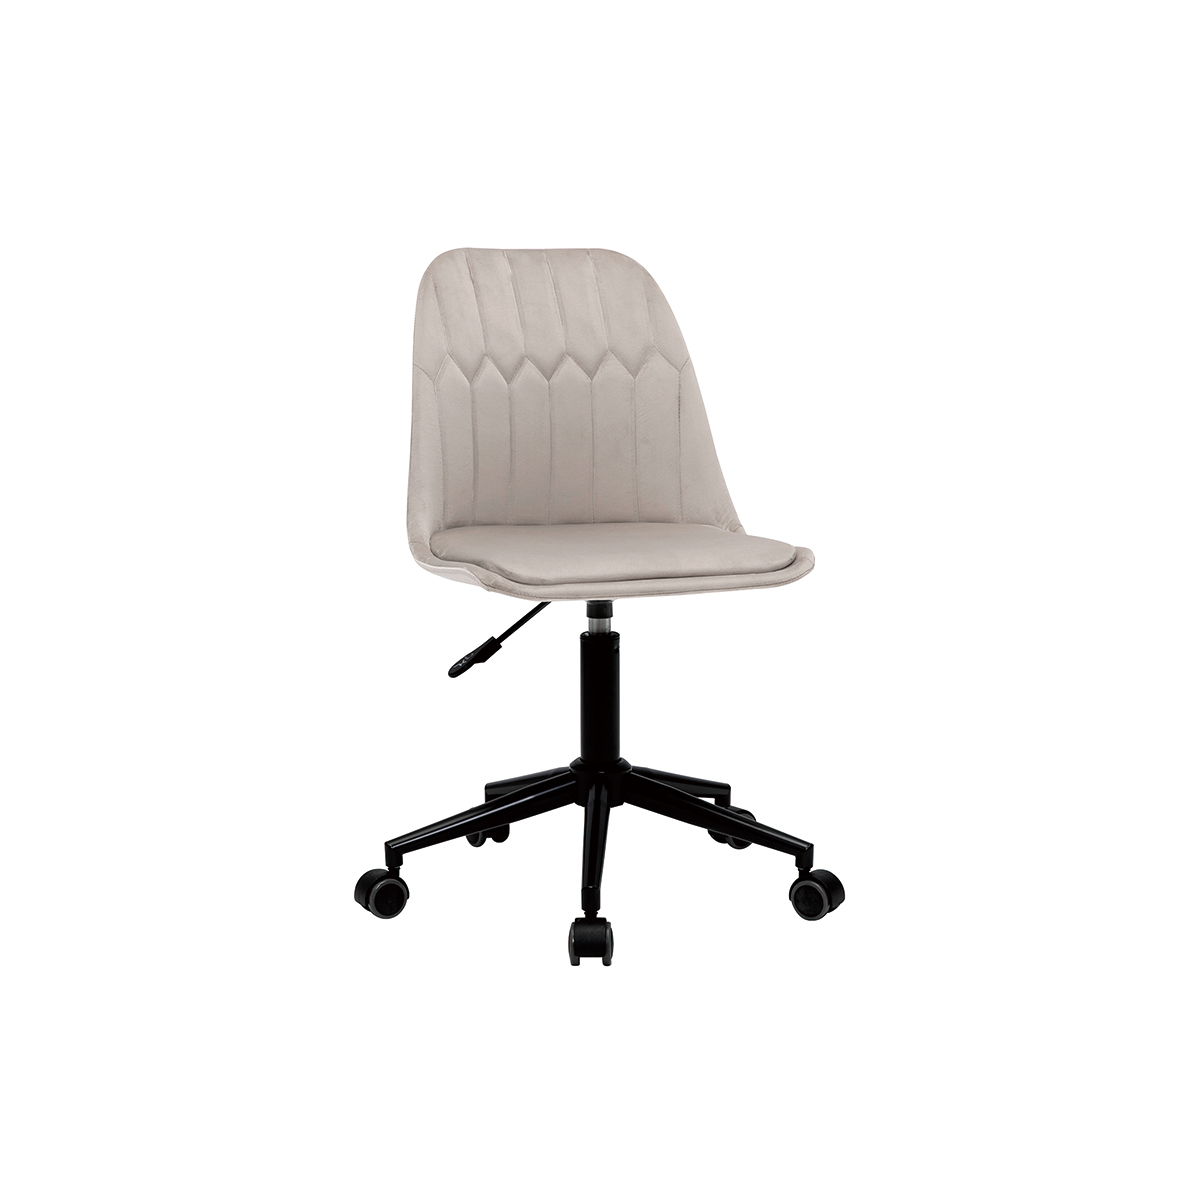 Chaise de bureau à roulettes design en tissu velours taupe et métal noir FUSE vue1